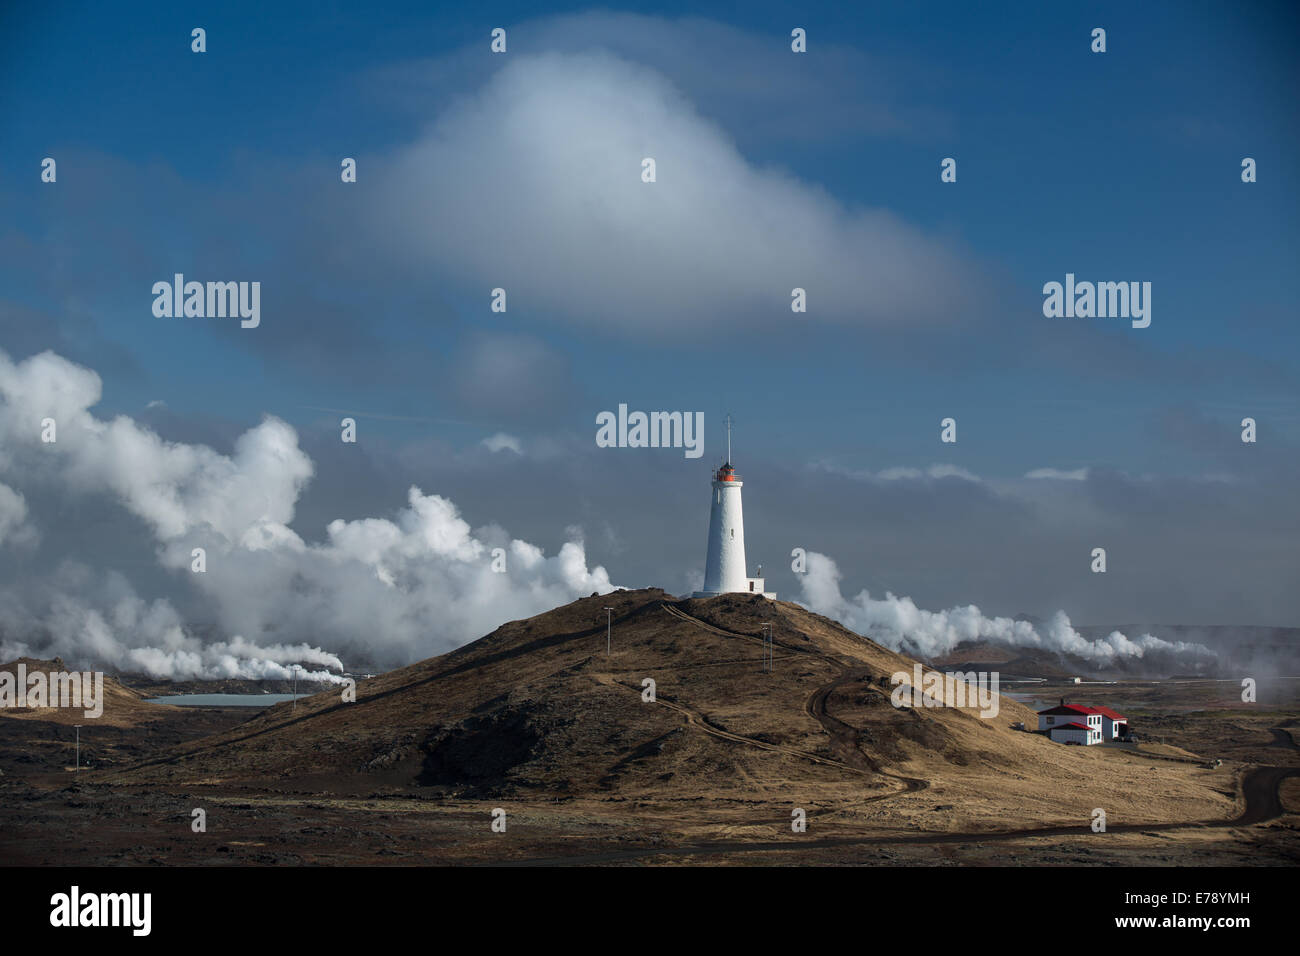 La vapeur provenant de la station d'énergie géothermique et le phare de la péninsule de Reykjanes, l'Islande Banque D'Images